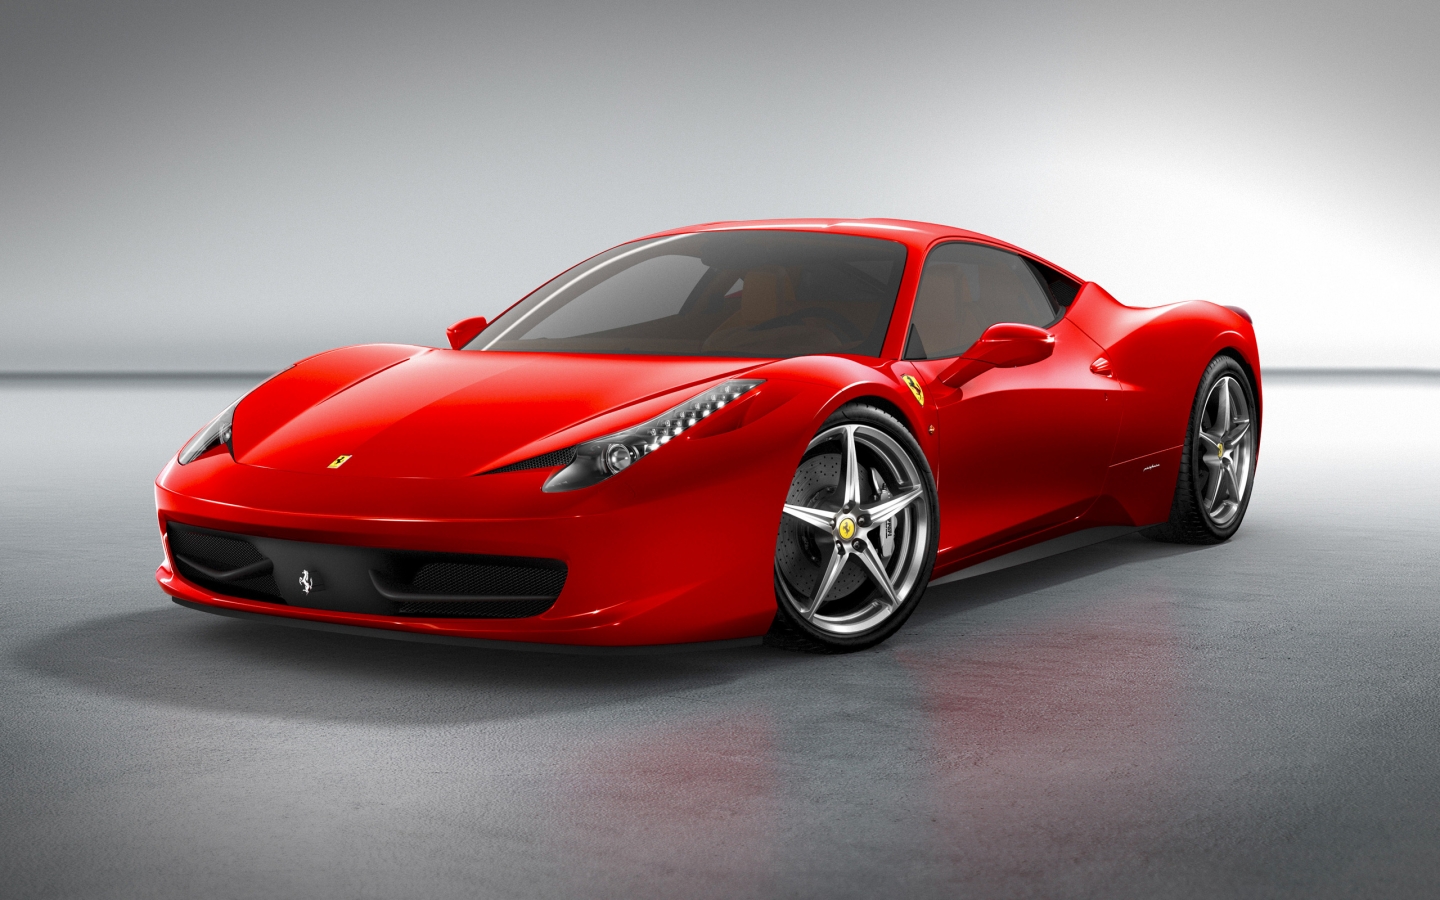 Ferrari 458 Italia Front for 1440 x 900 widescreen resolution